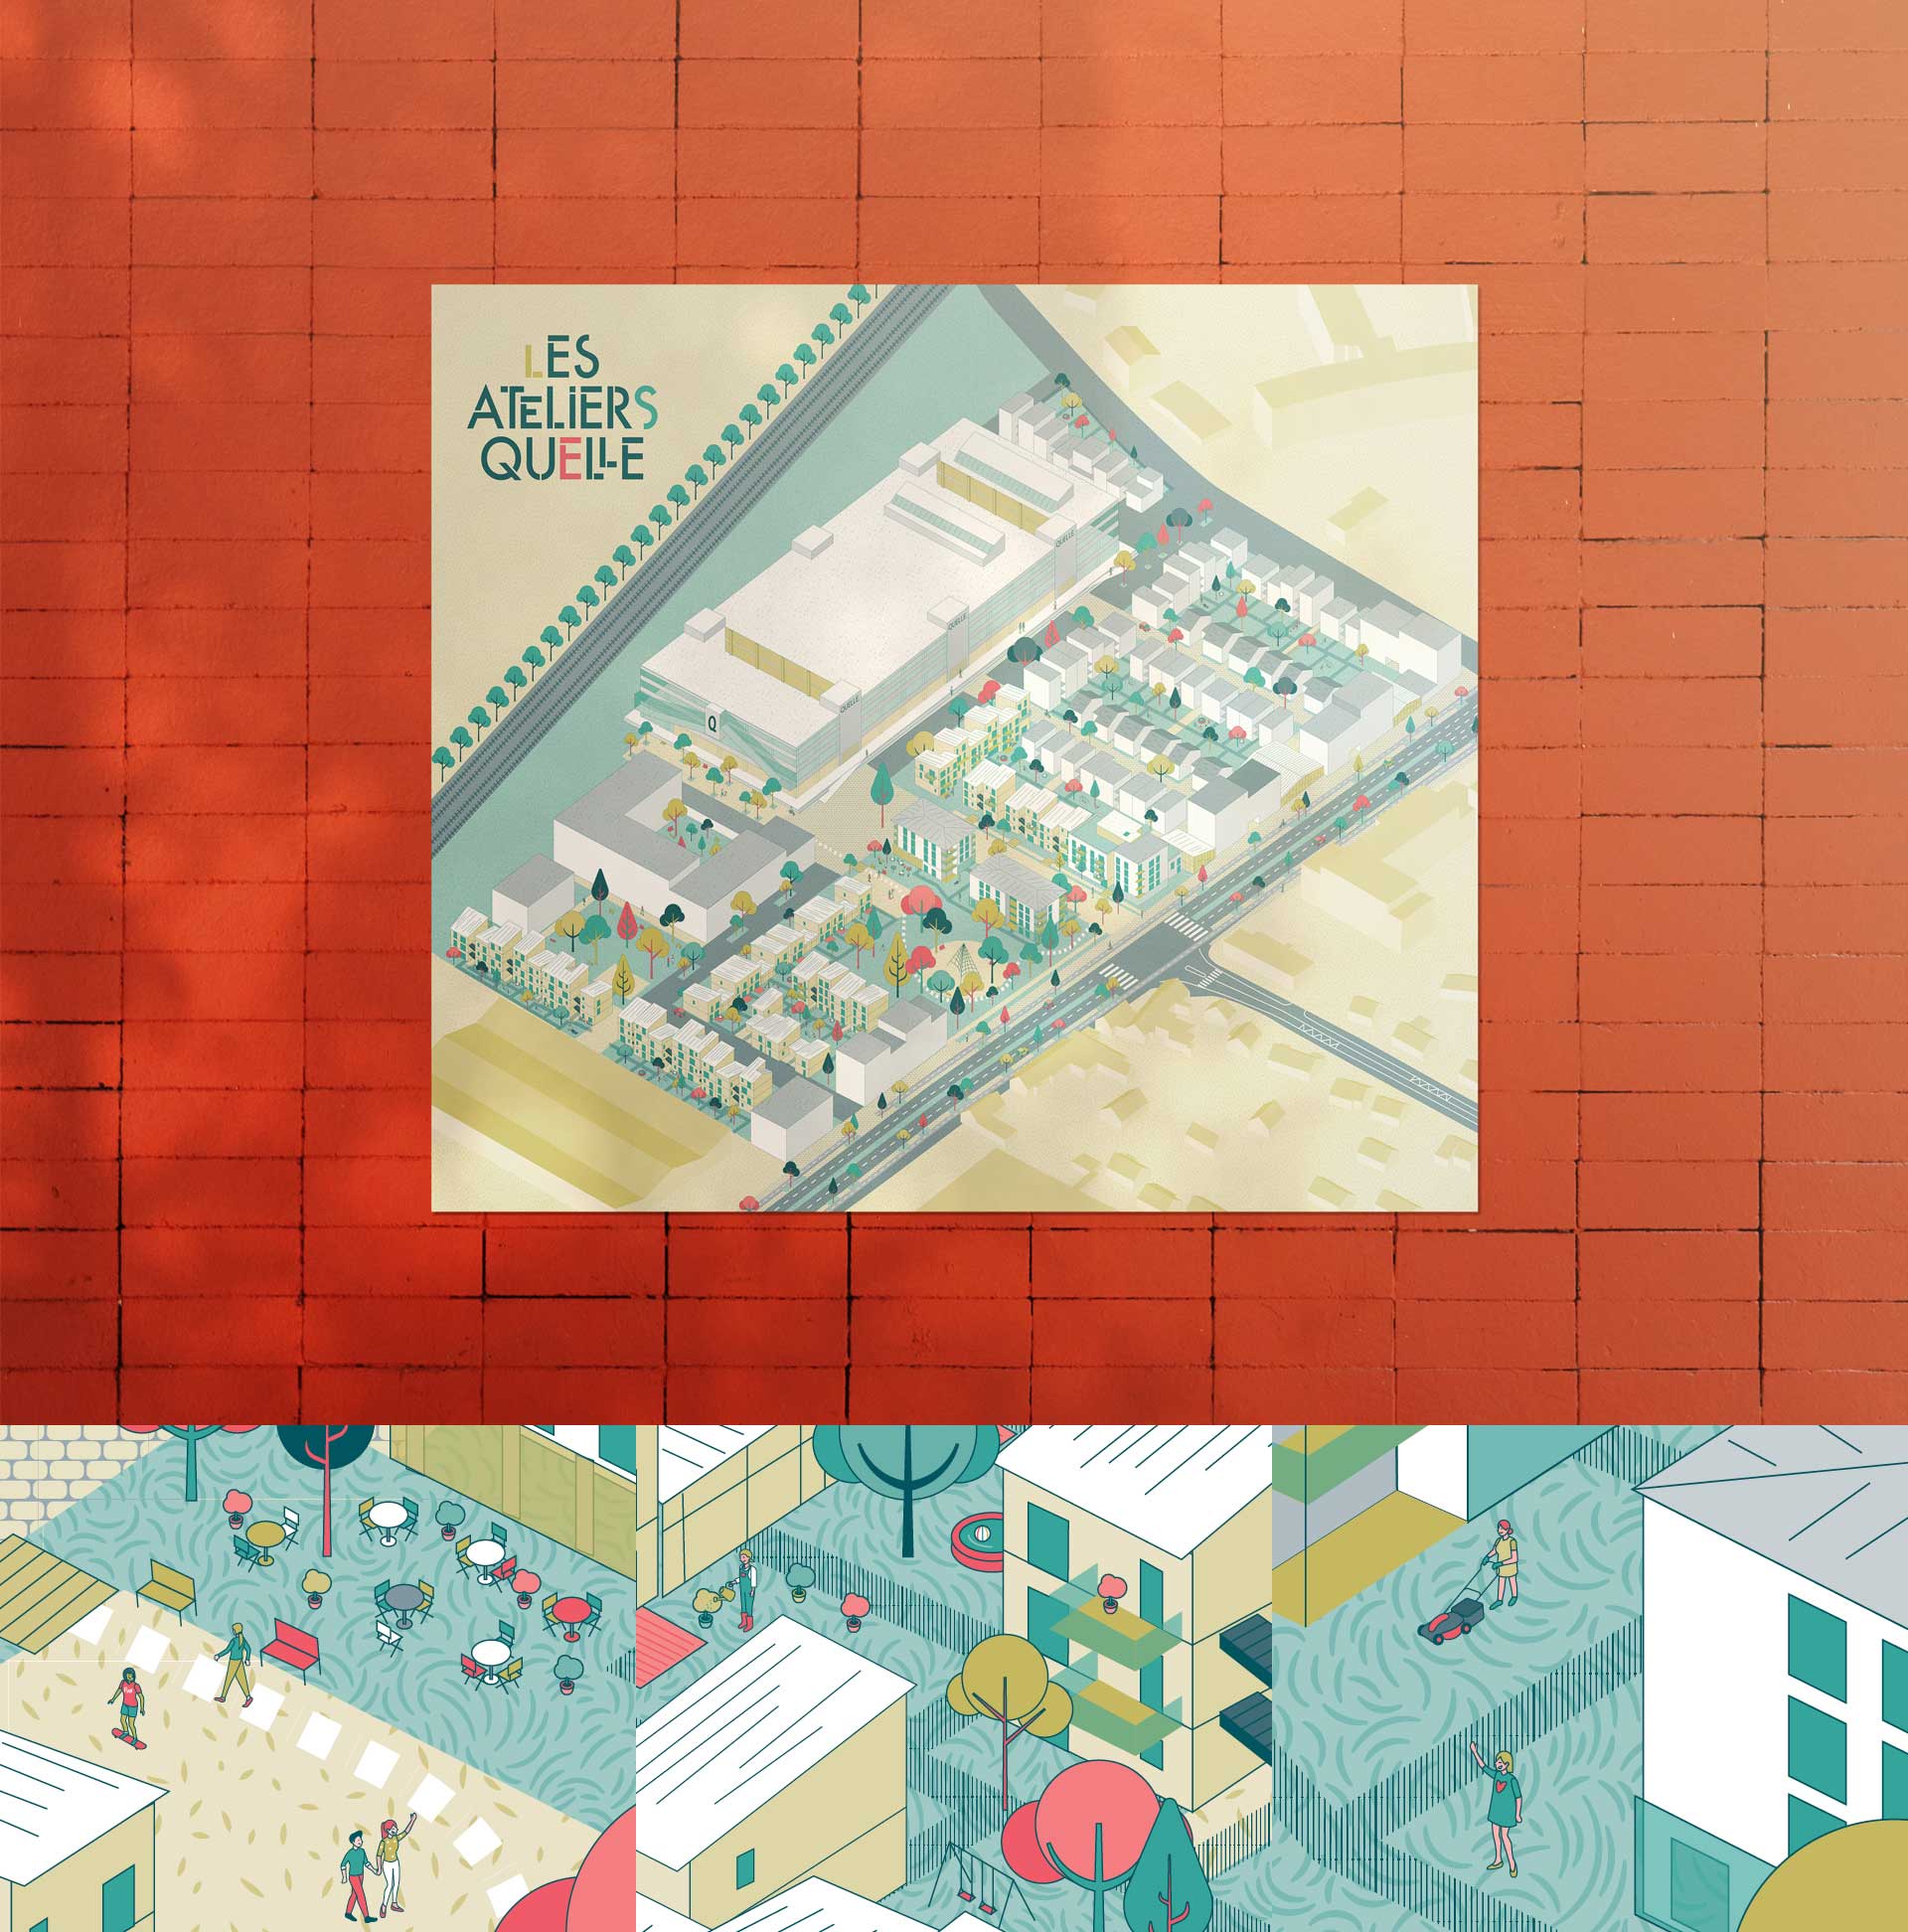 plan illustré du futur quartier des ateliers quelle à Orléans - Par le studio de design graphique okowoko à Amiens dans les Hauts de France